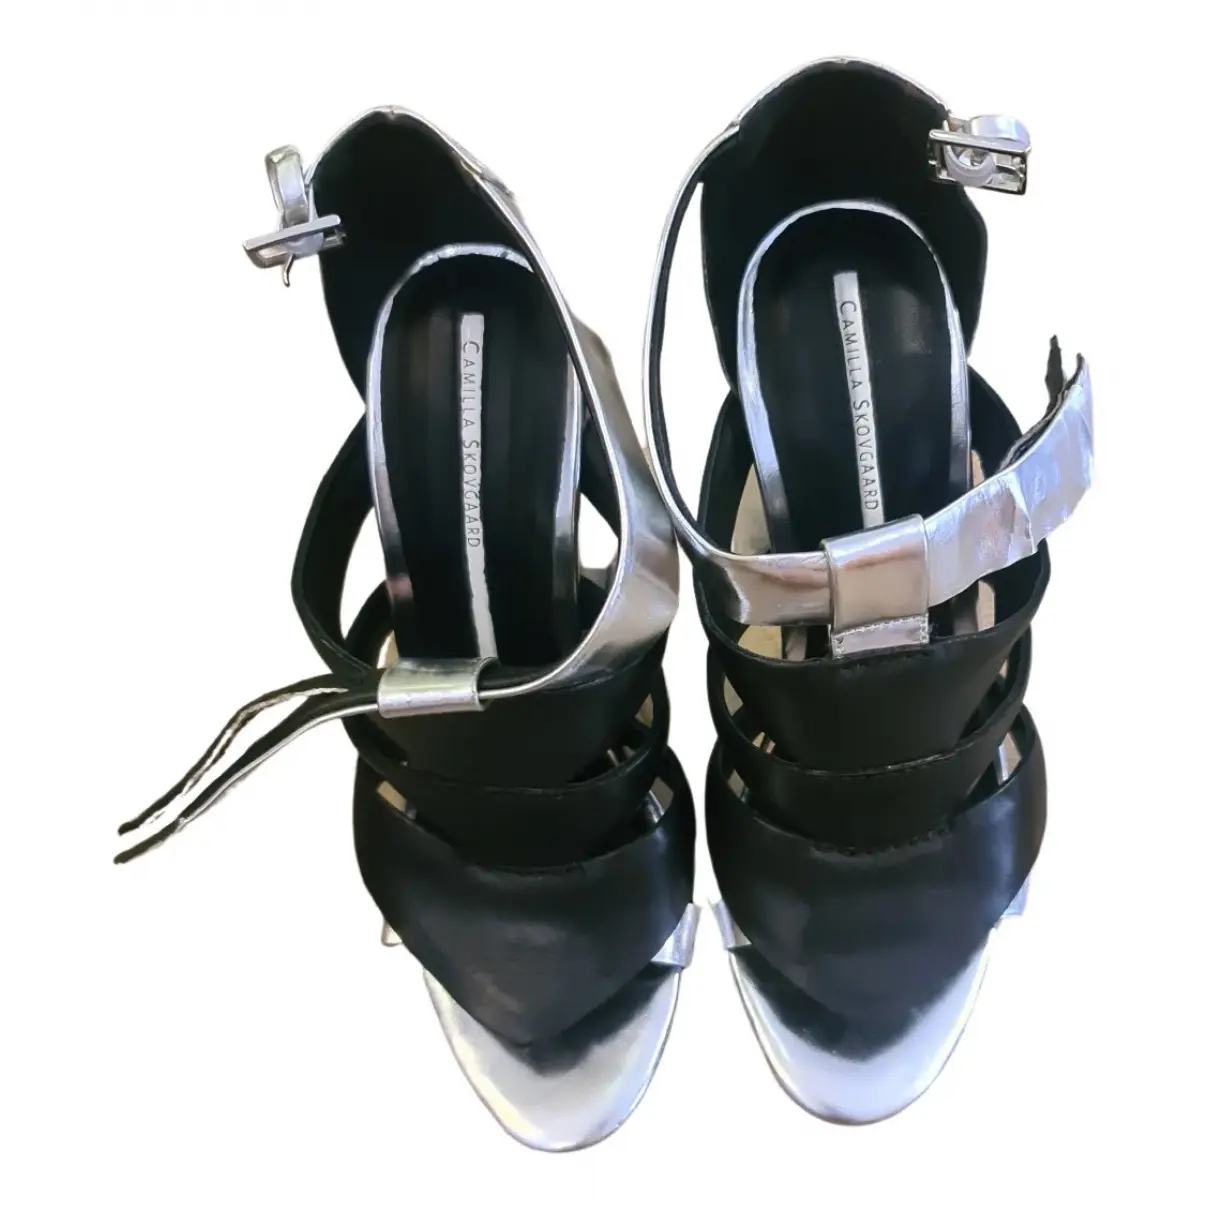 Buy Camilla Skovgaard Leather sandals online